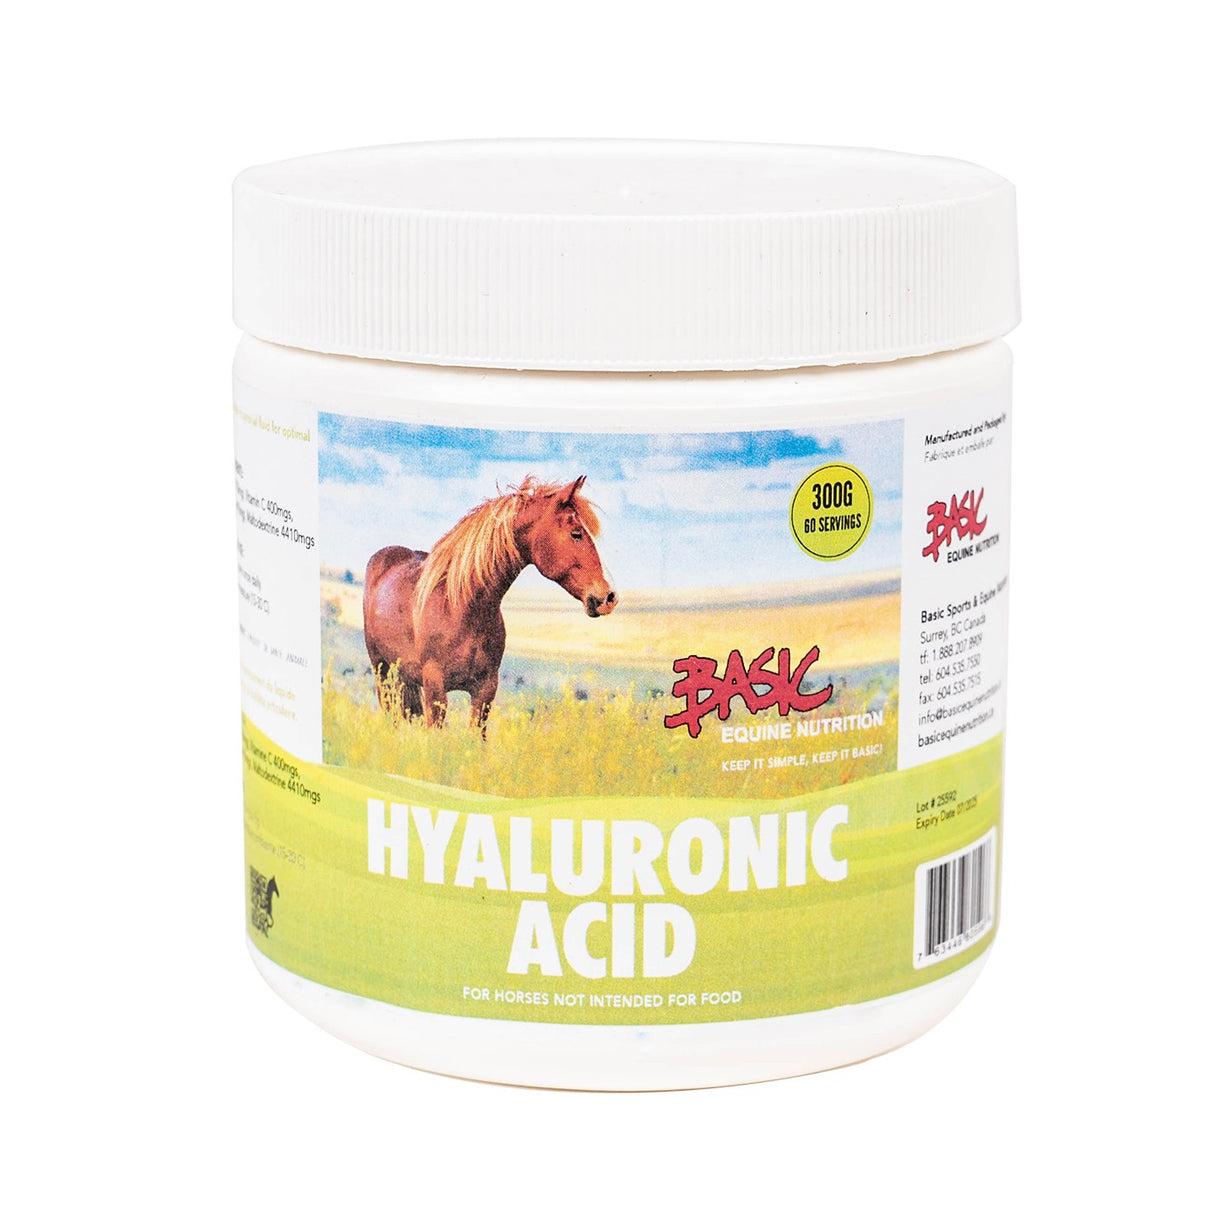 Basic Equine Nutrition Acide Hyaluronique 99% 300 g